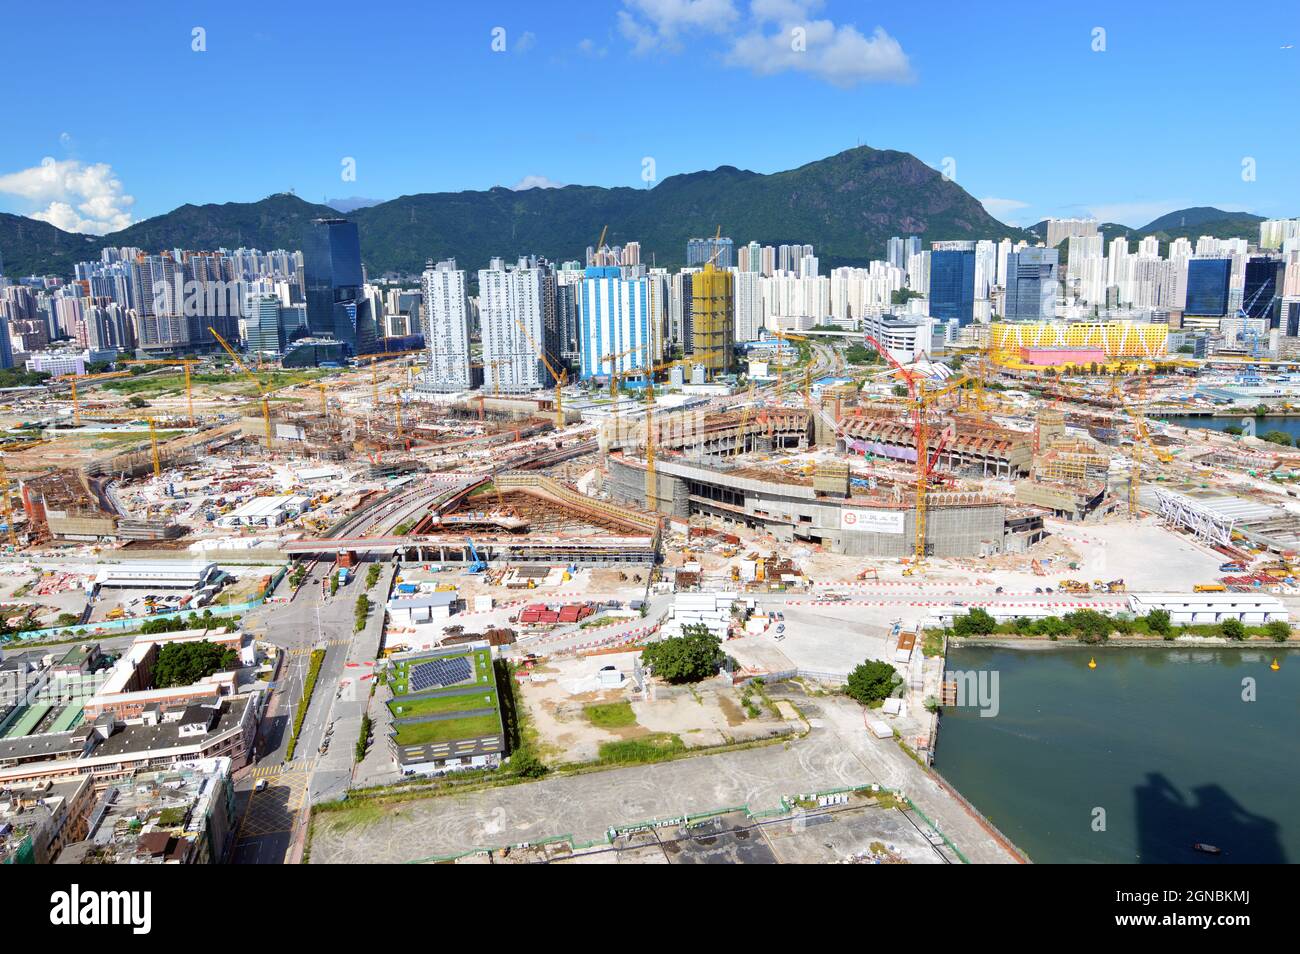 Vista della costruzione del Kai Tak Sports Park presso l'area di sviluppo di Kai Tak (啟德發展計劃), l'ex sito dell'aeroporto di Hong Kong Kai Tak, nel settembre 2021 Foto Stock